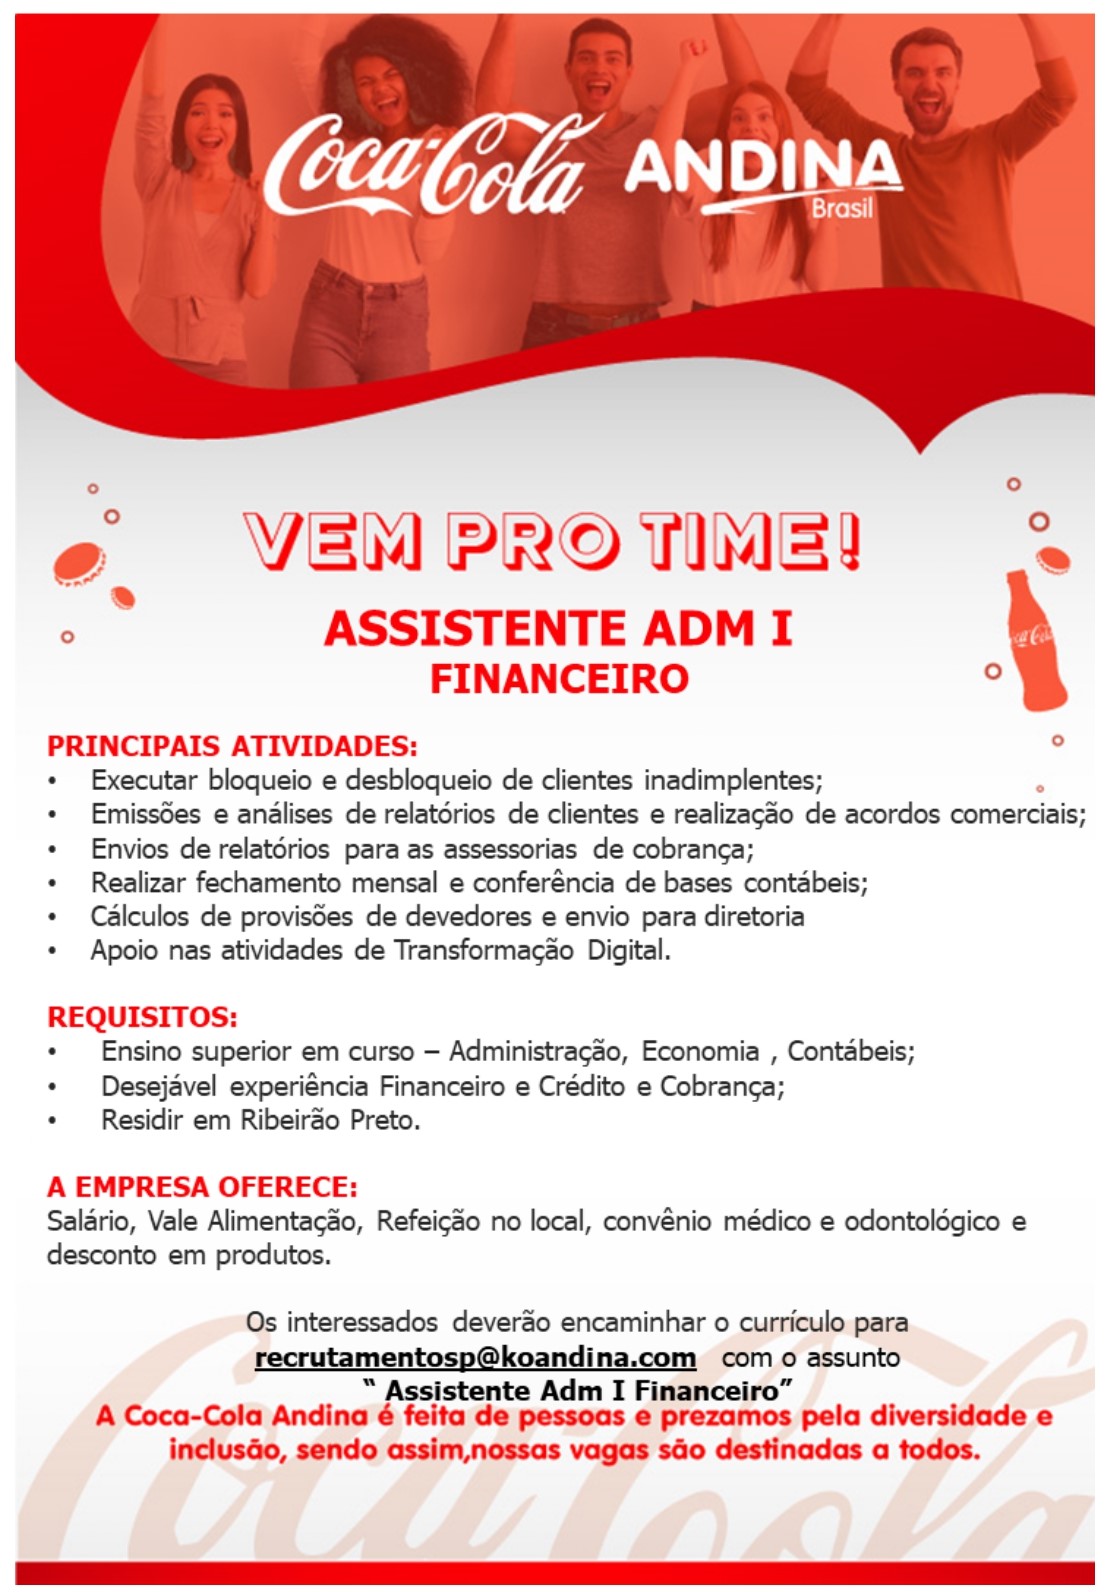 Coca_Cola_Assistente_Administrativo.Financeiro_page-0001.jpg